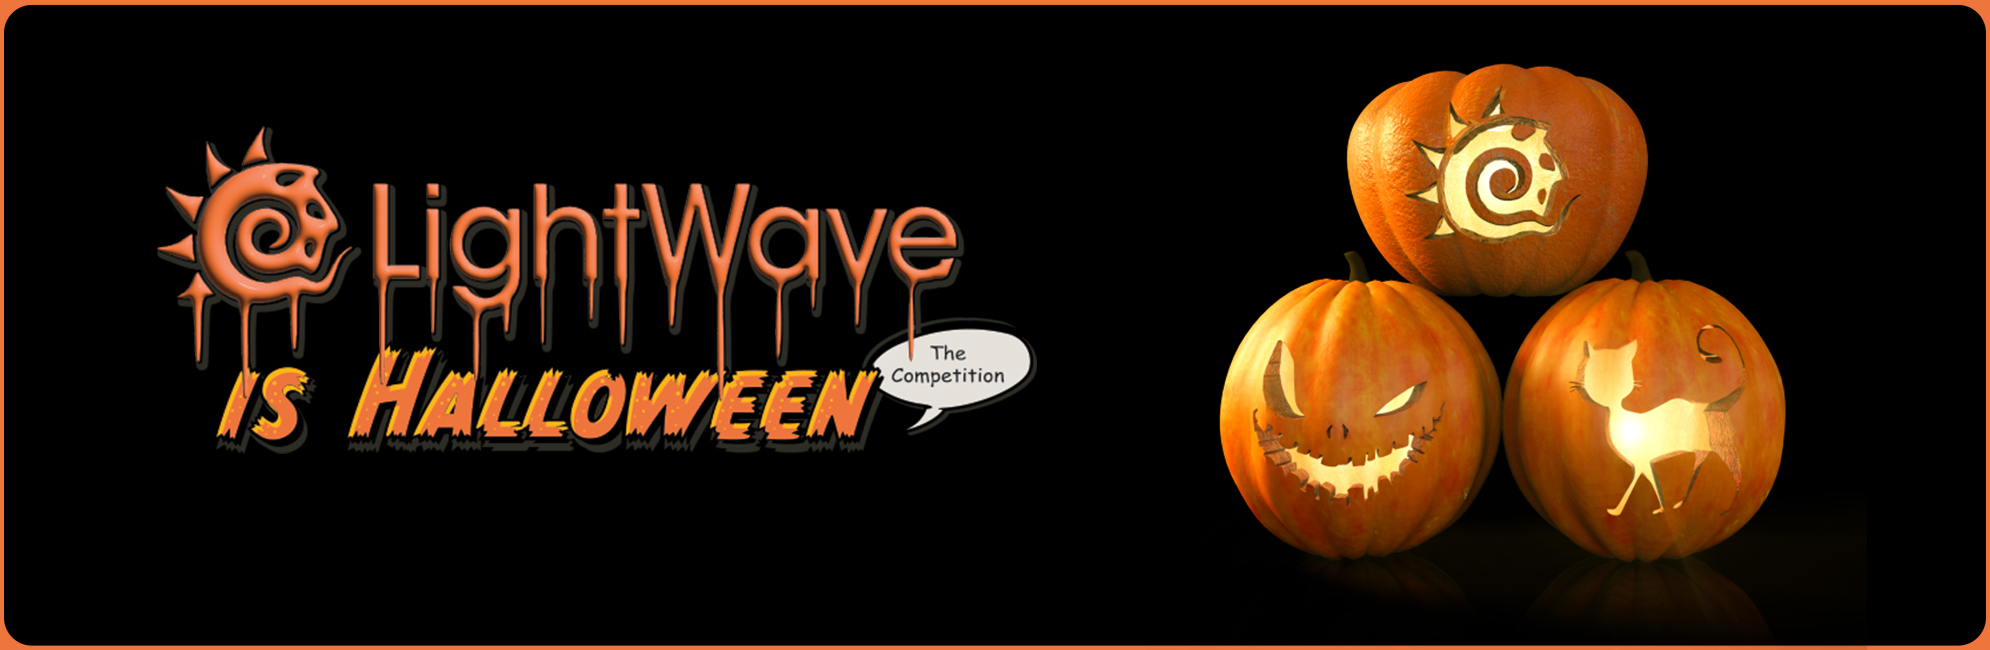 Nome: LightWave is Halloween  LightWave 3D Promo 20320918.jpg
Visite: 56
Dimensione: 387.4 KB